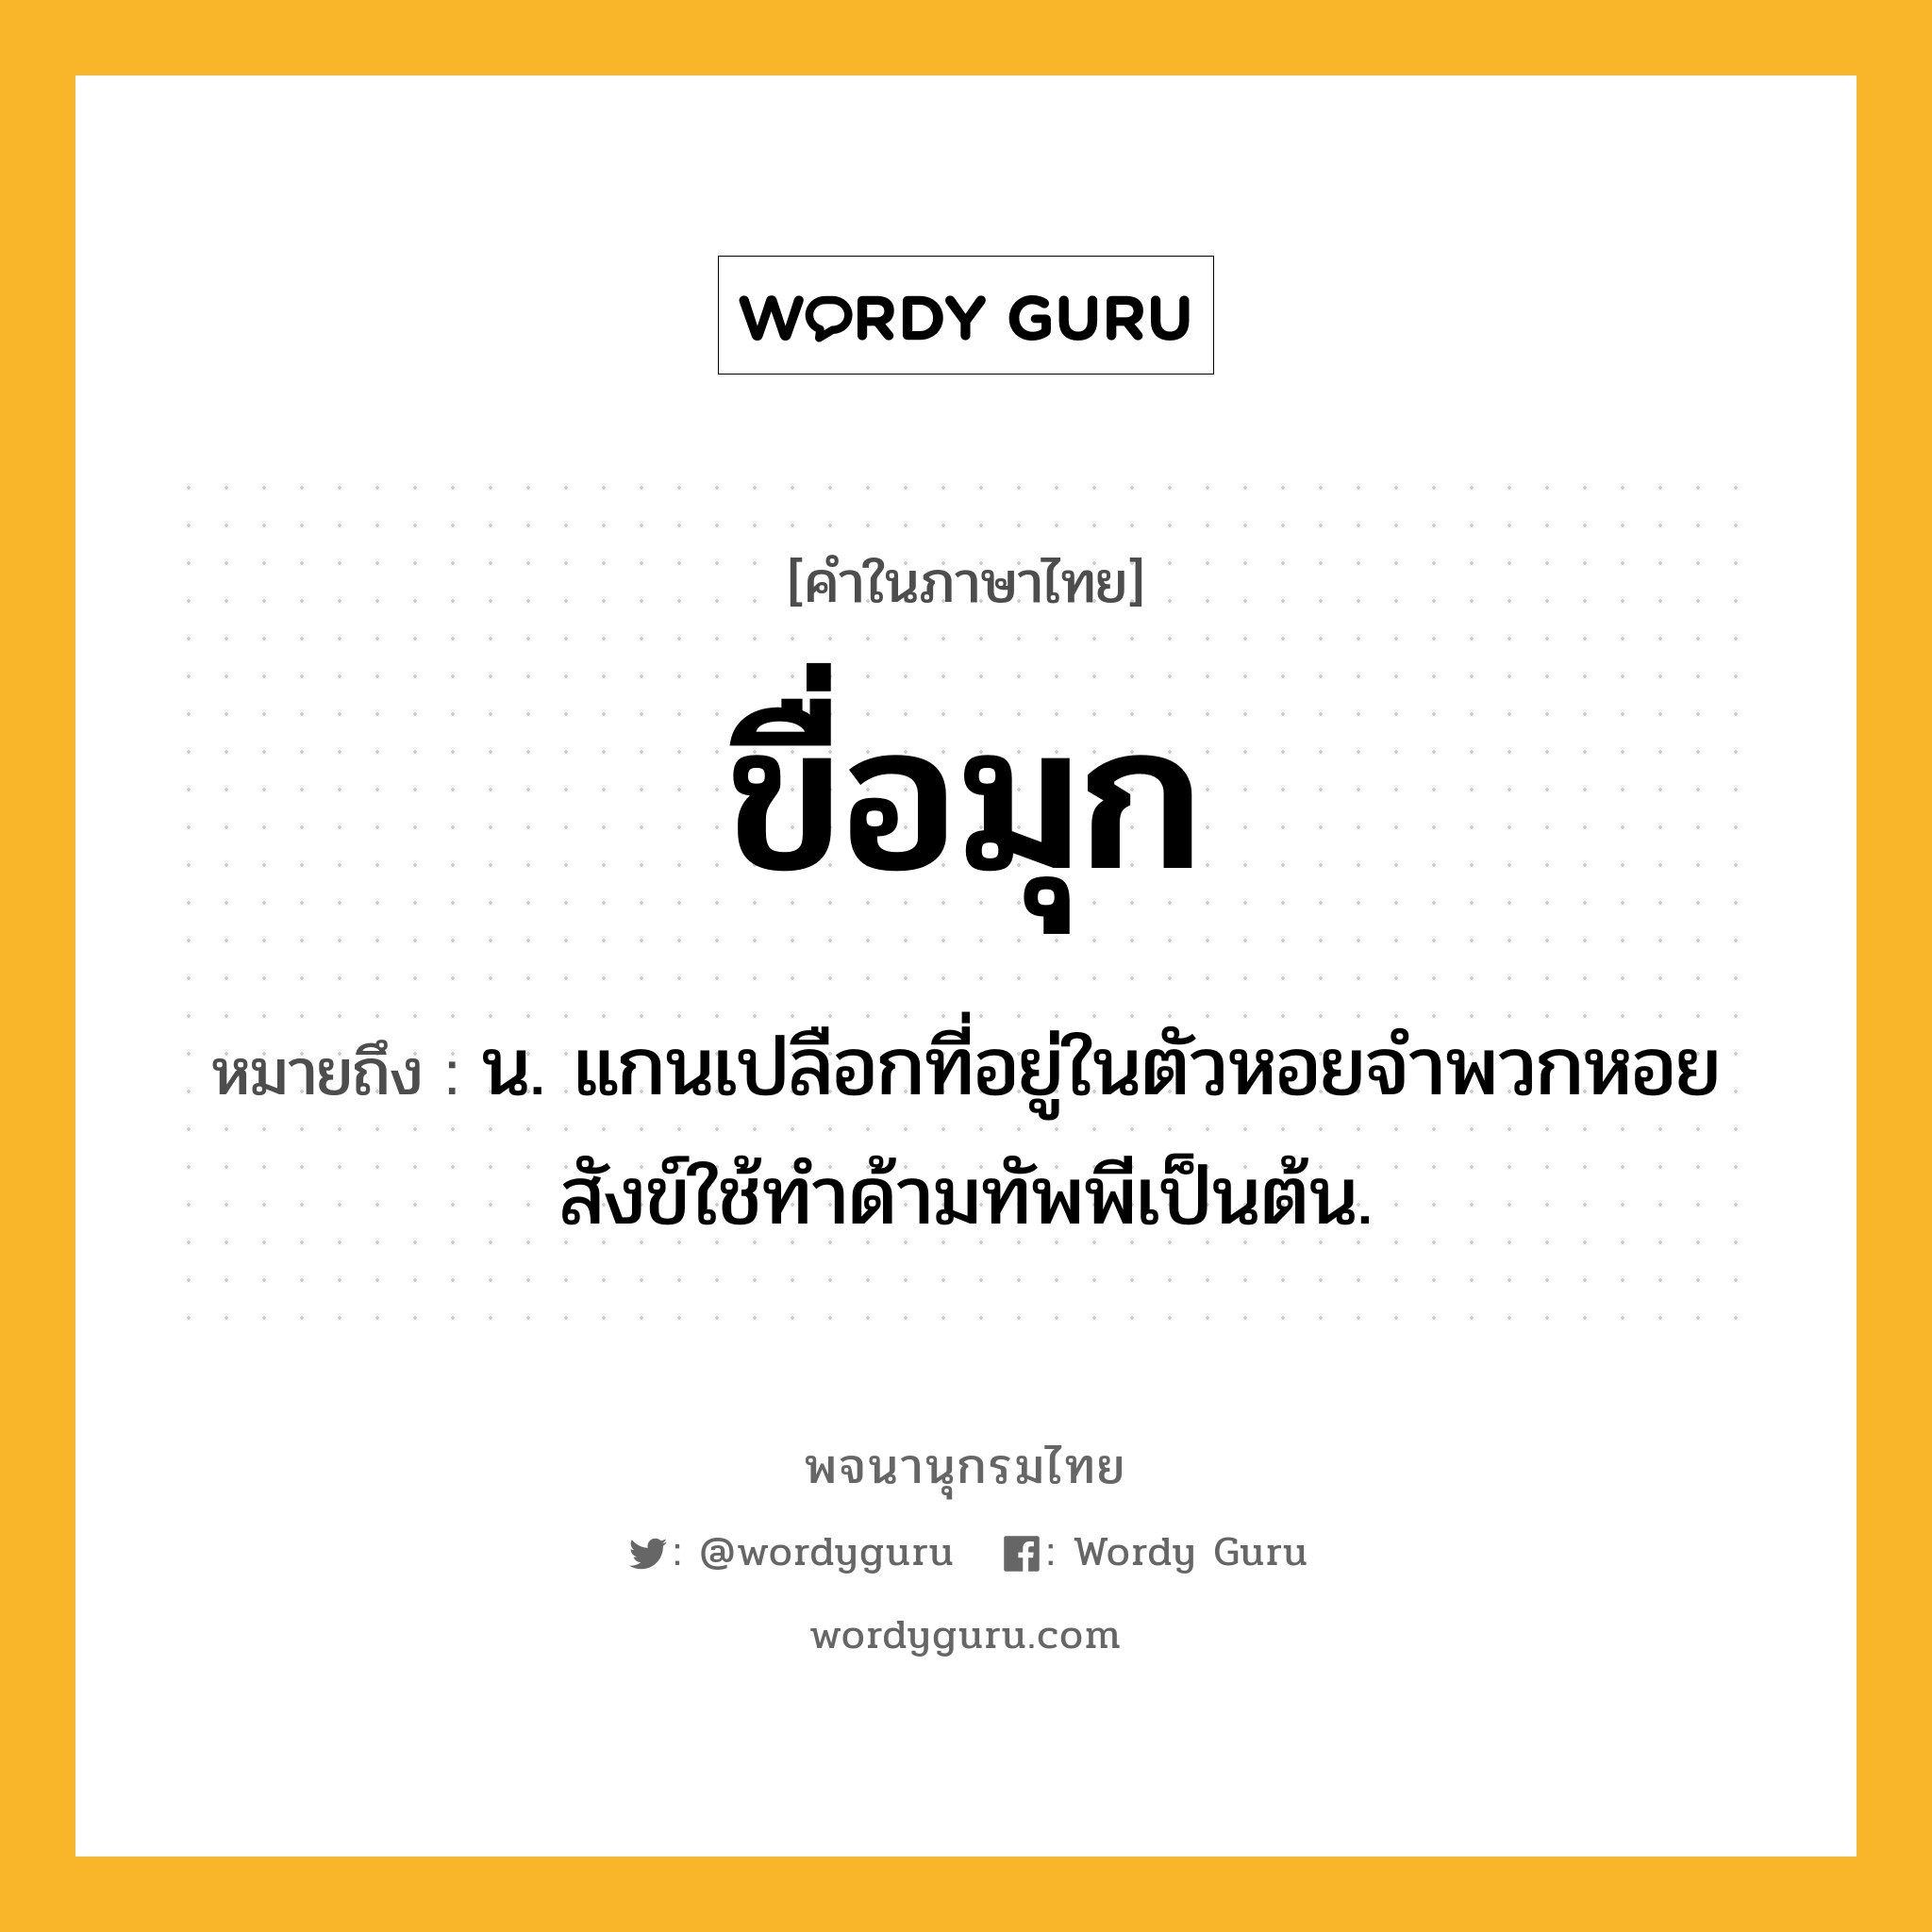 ขื่อมุก ความหมาย หมายถึงอะไร?, คำในภาษาไทย ขื่อมุก หมายถึง น. แกนเปลือกที่อยู่ในตัวหอยจำพวกหอยสังข์ใช้ทำด้ามทัพพีเป็นต้น.